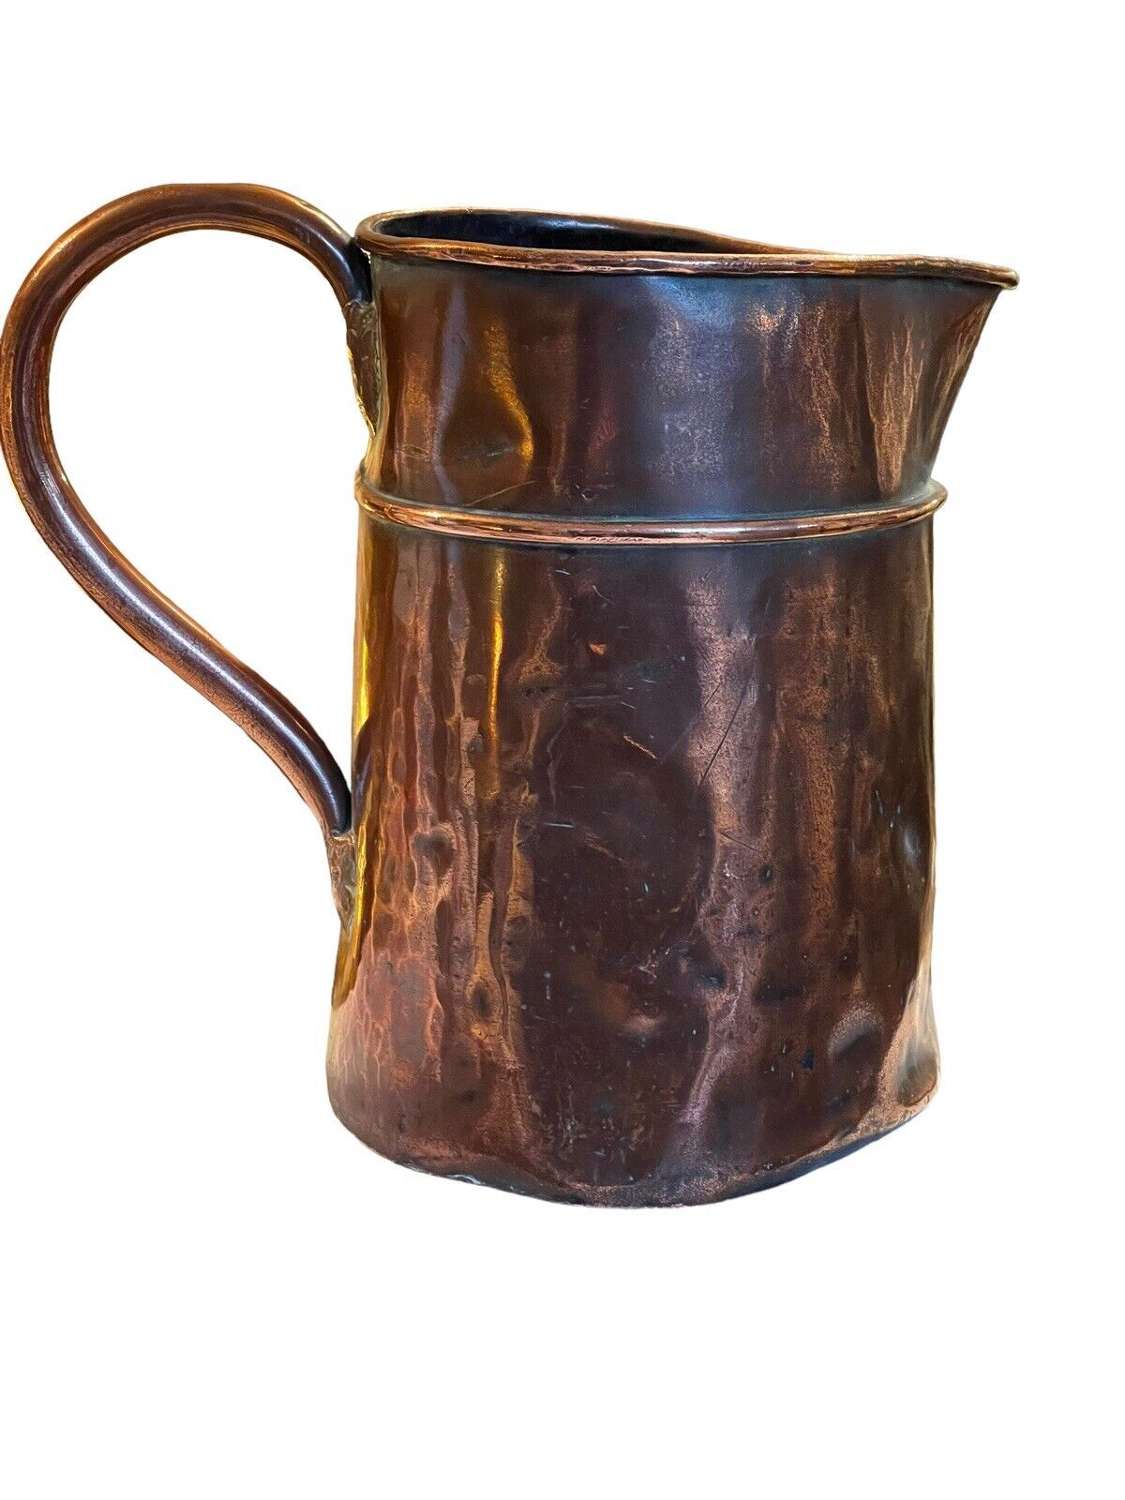 18th Century copper ale pitcher